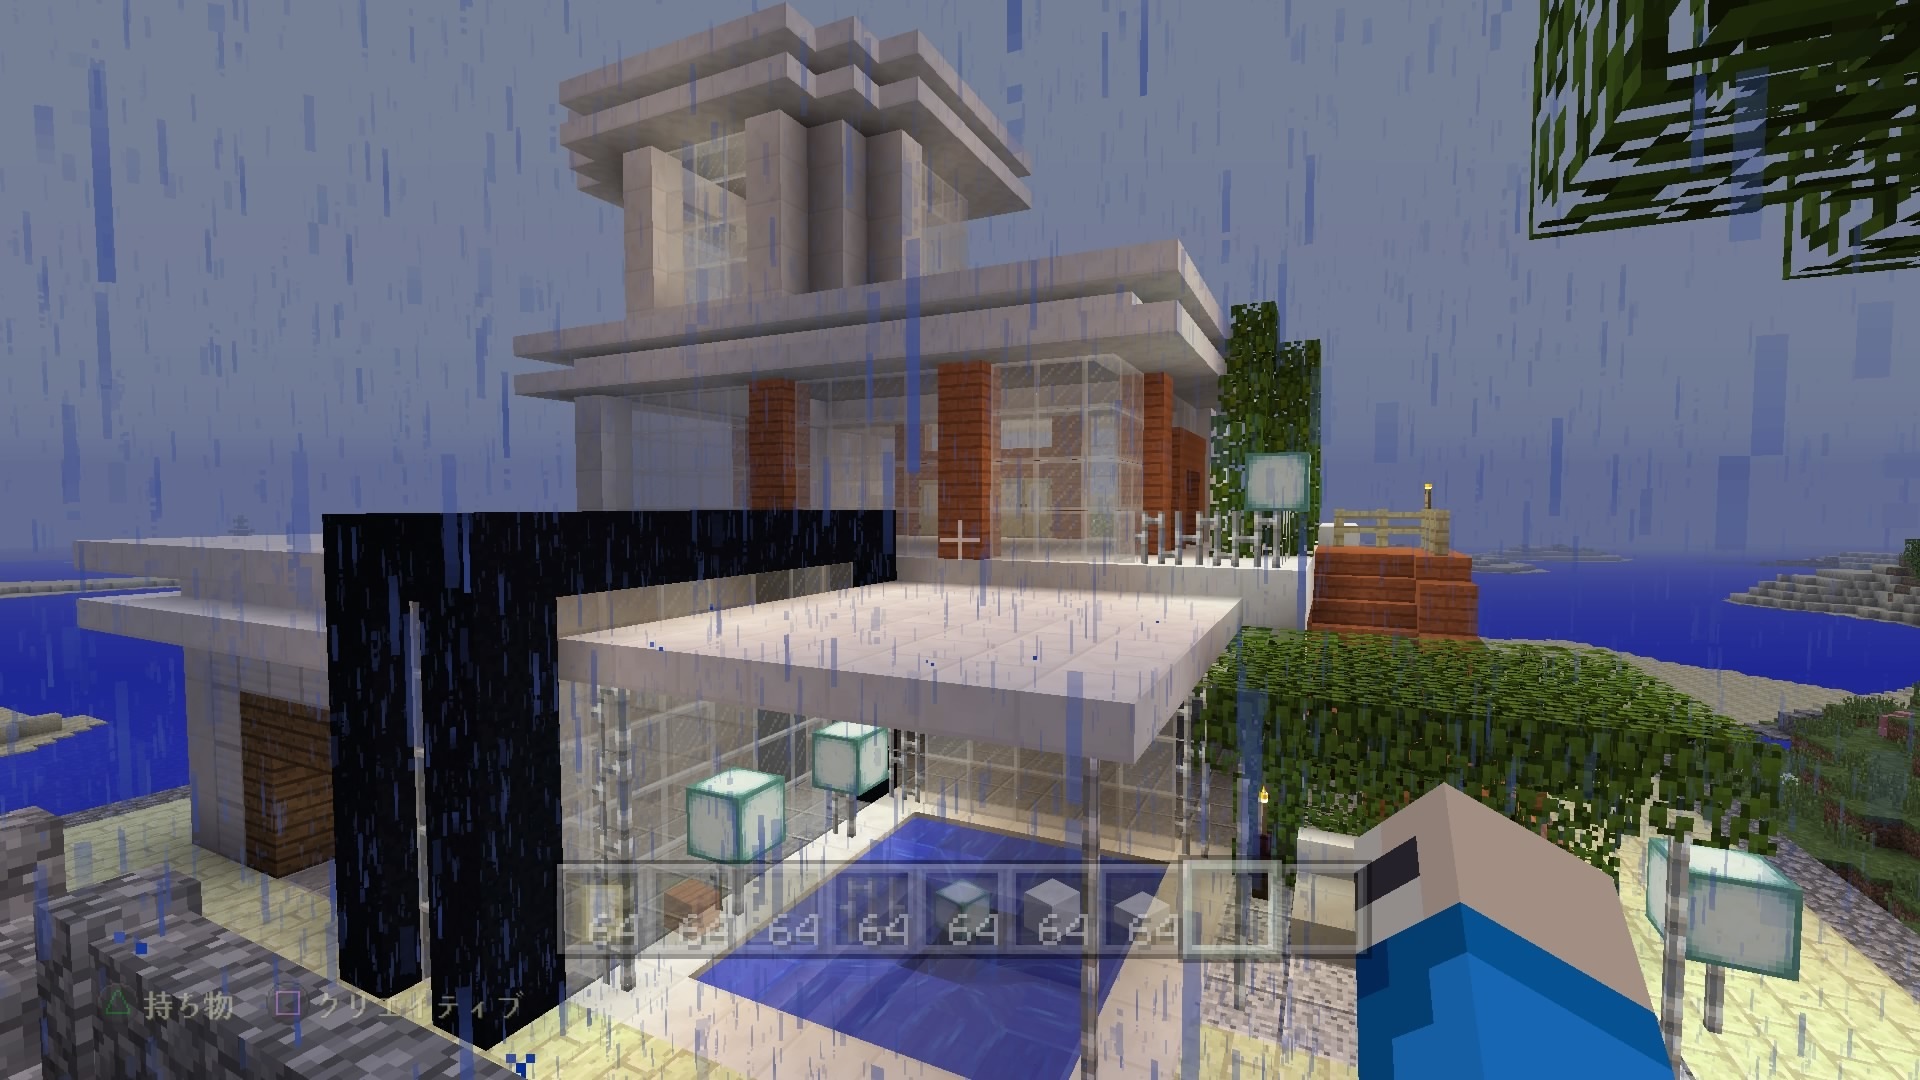 マイクラps4 おしゃれな家を作ろう モダンハウスの作り方 屋根 コツ